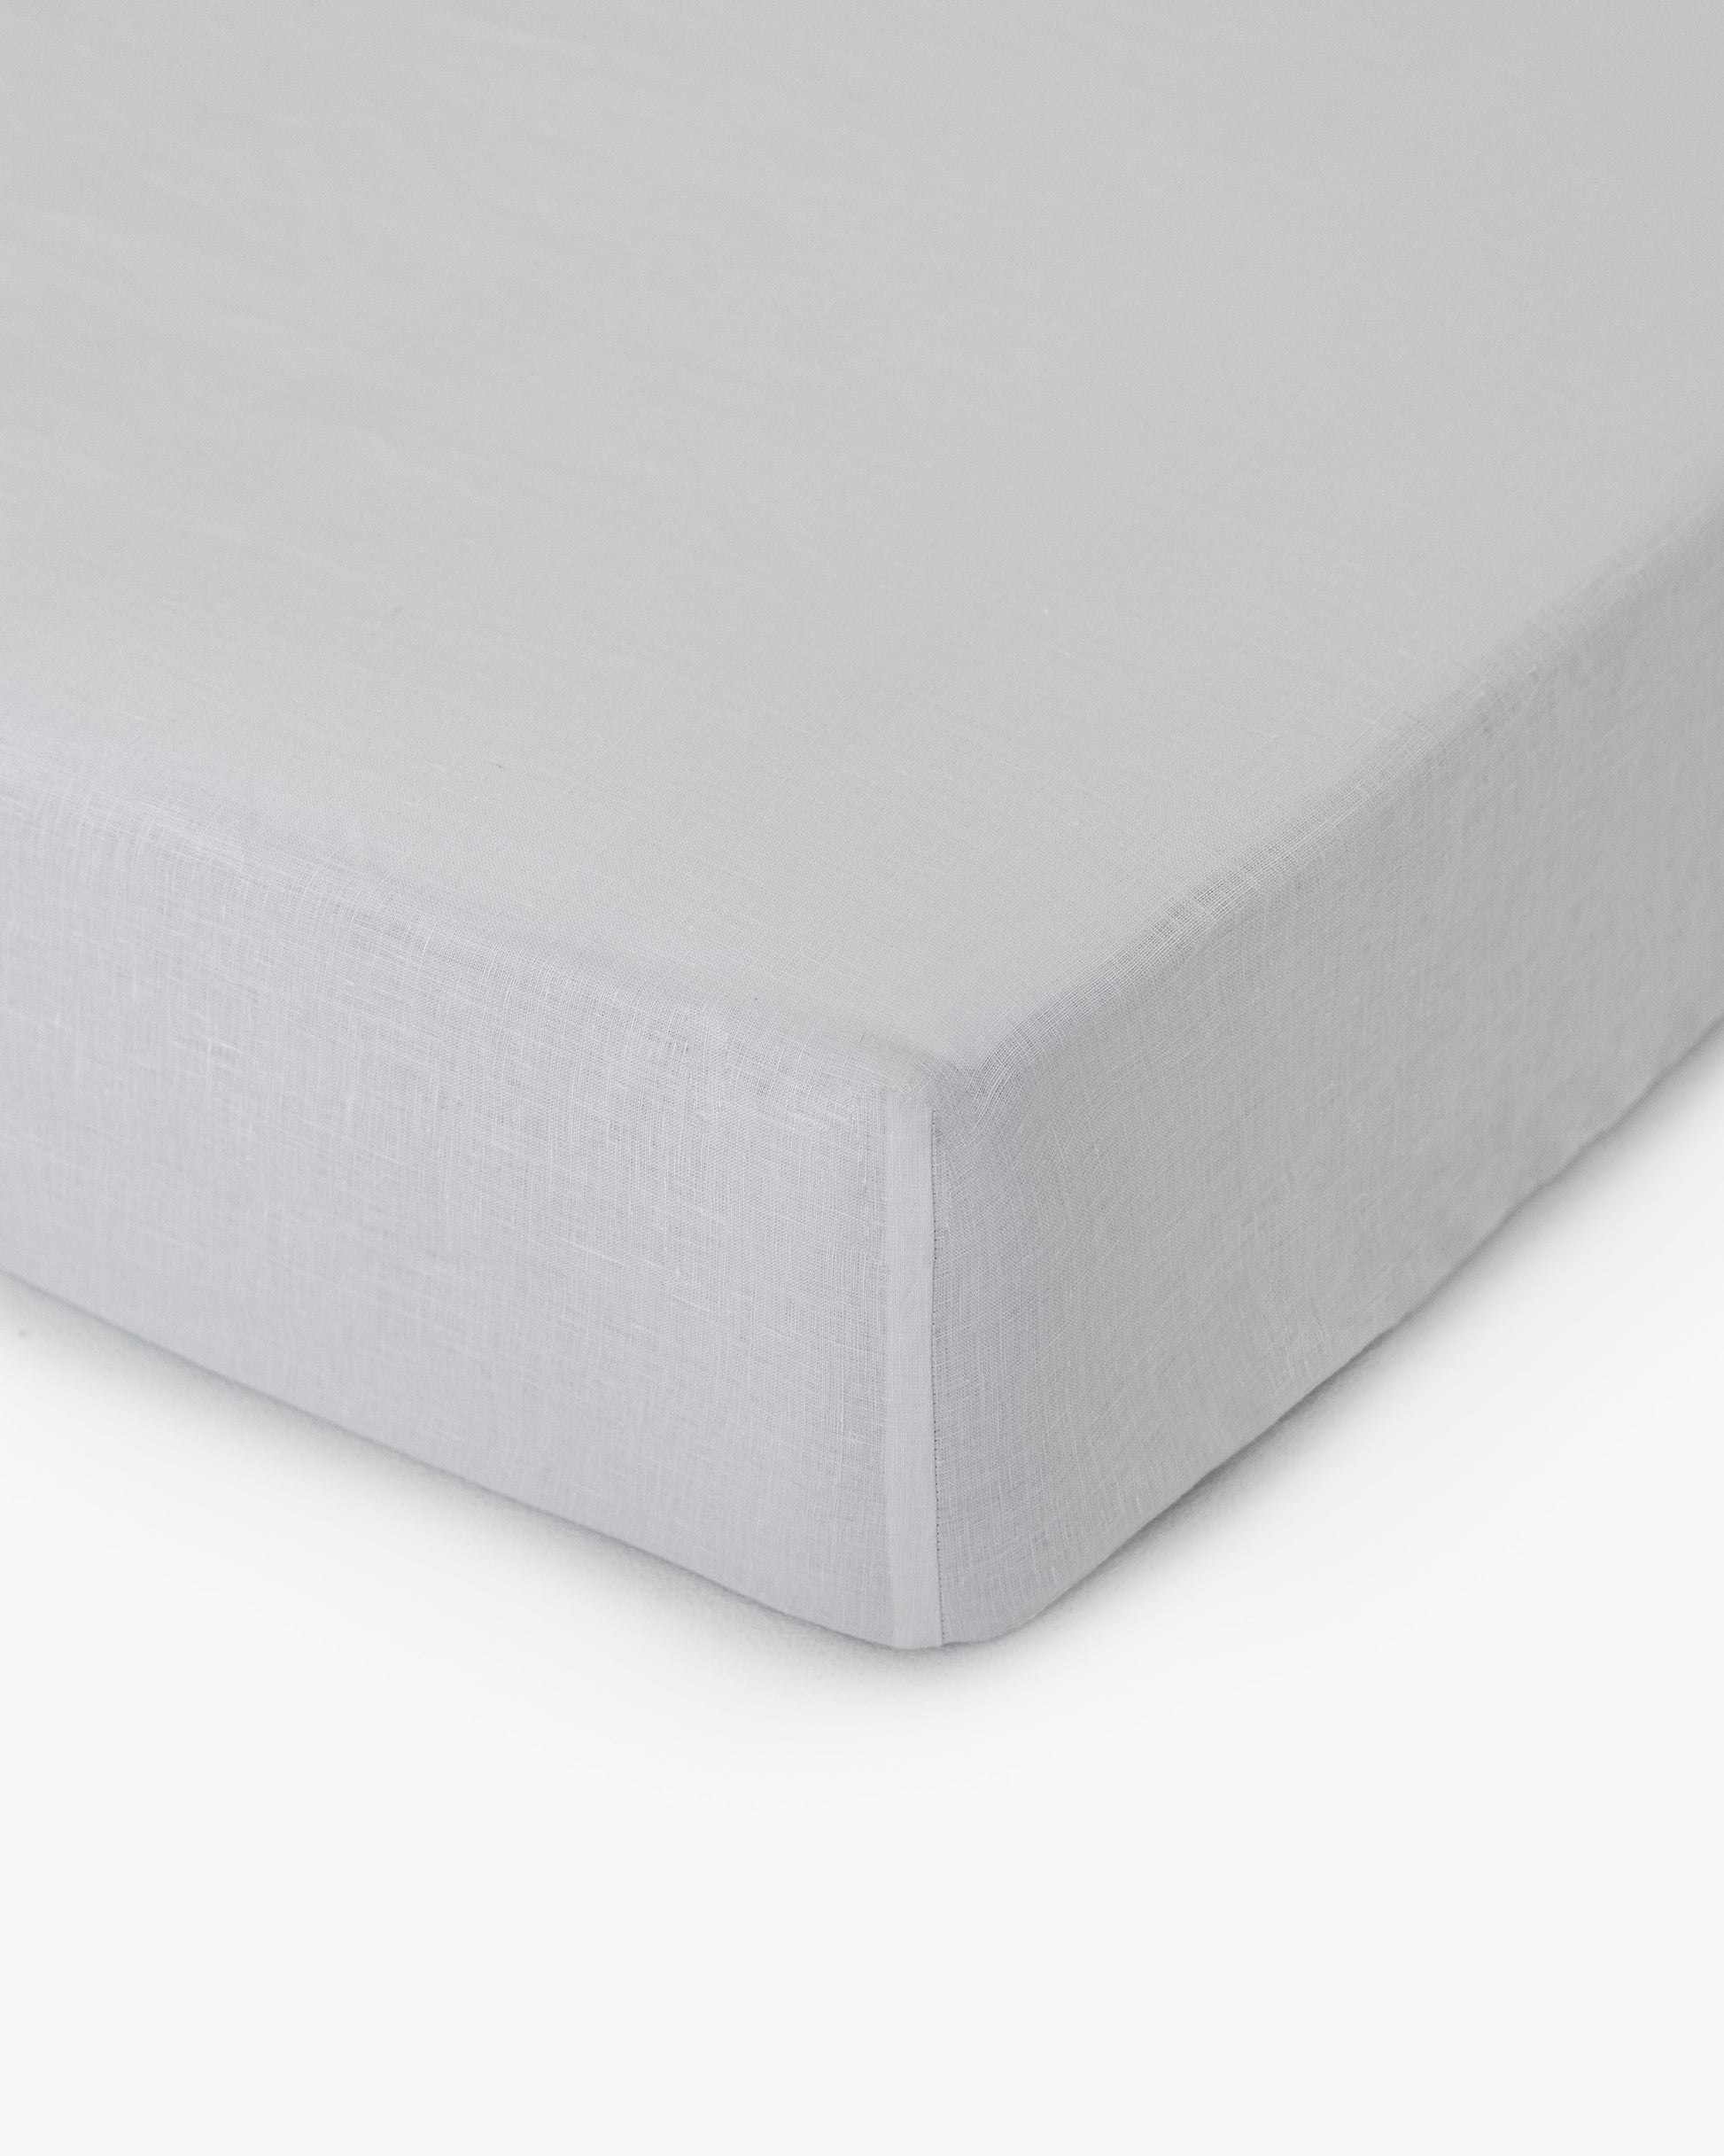 Light gray linen fitted sheet - MagicLinen